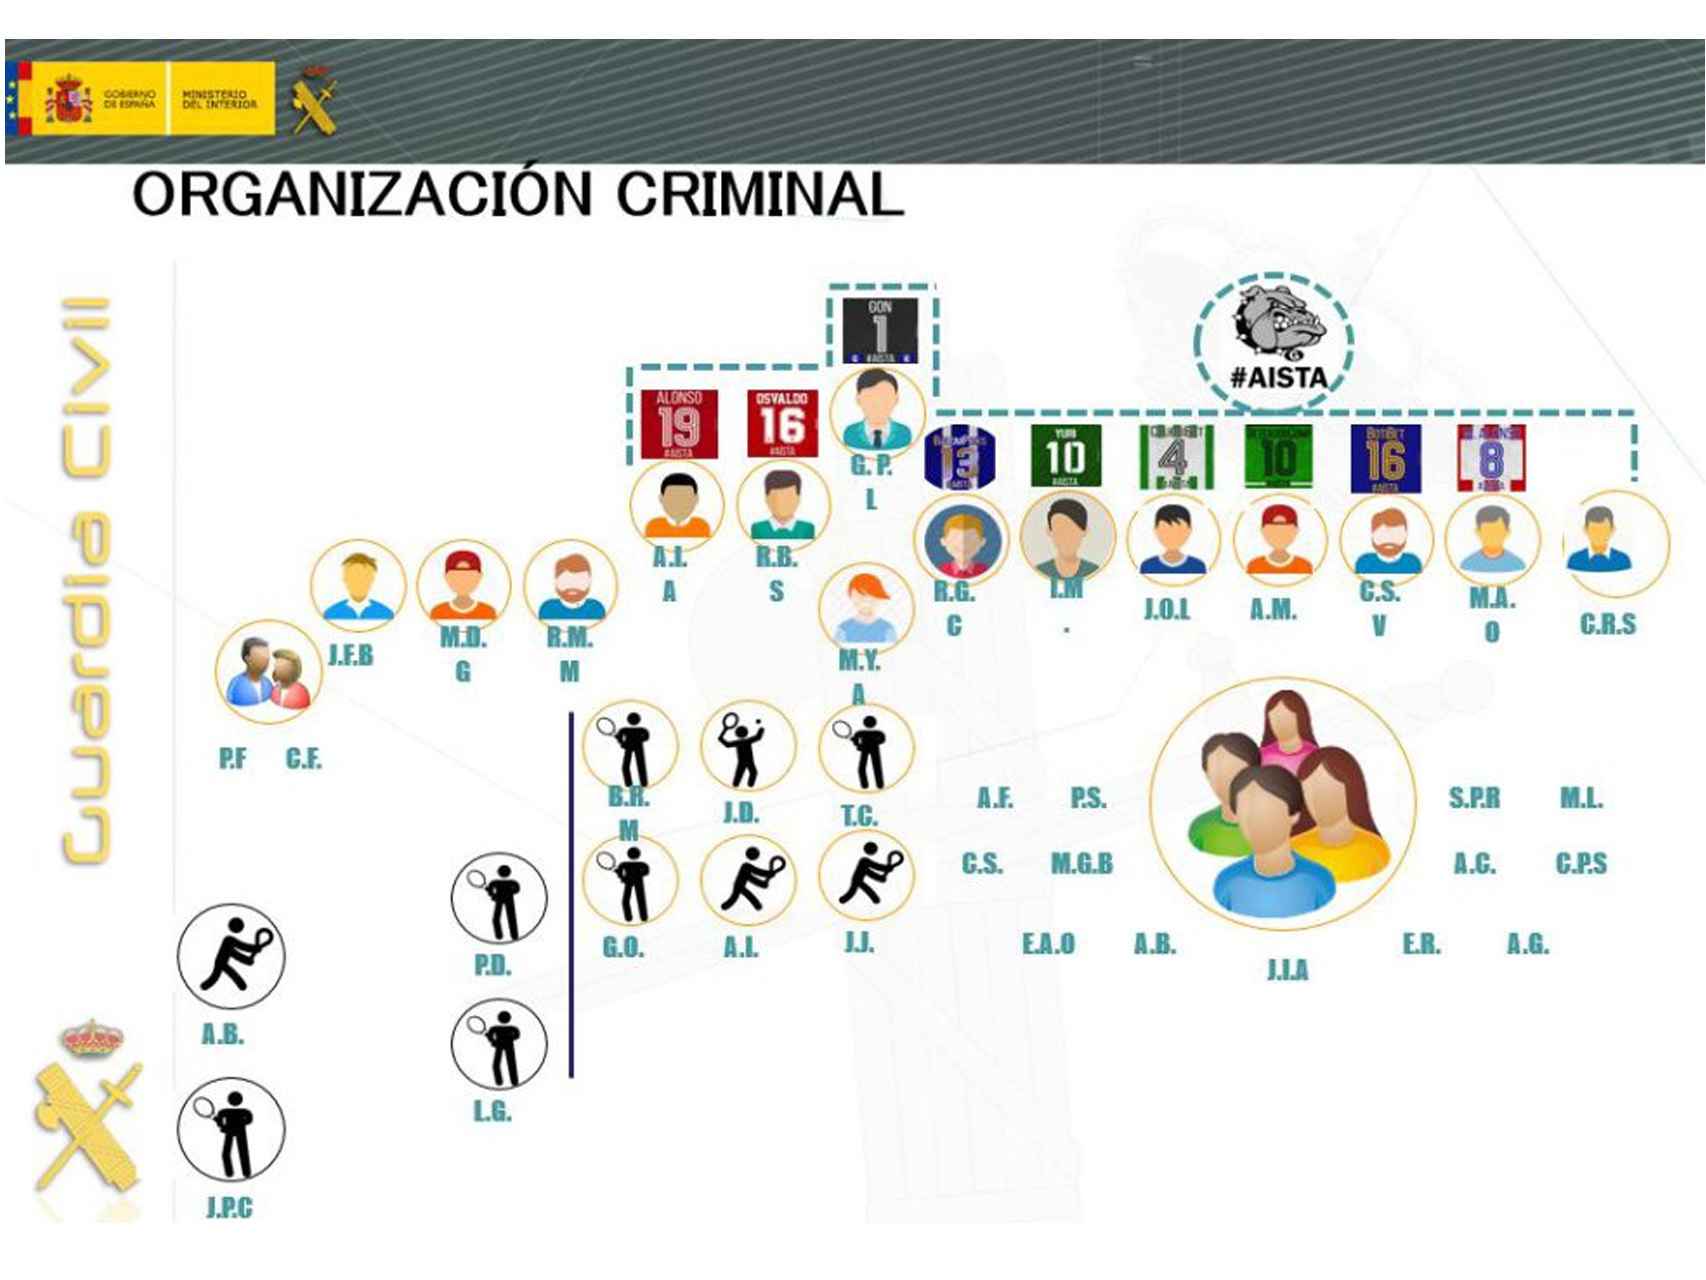 Estructura de la organización desarticulada por la Guardia Civil.